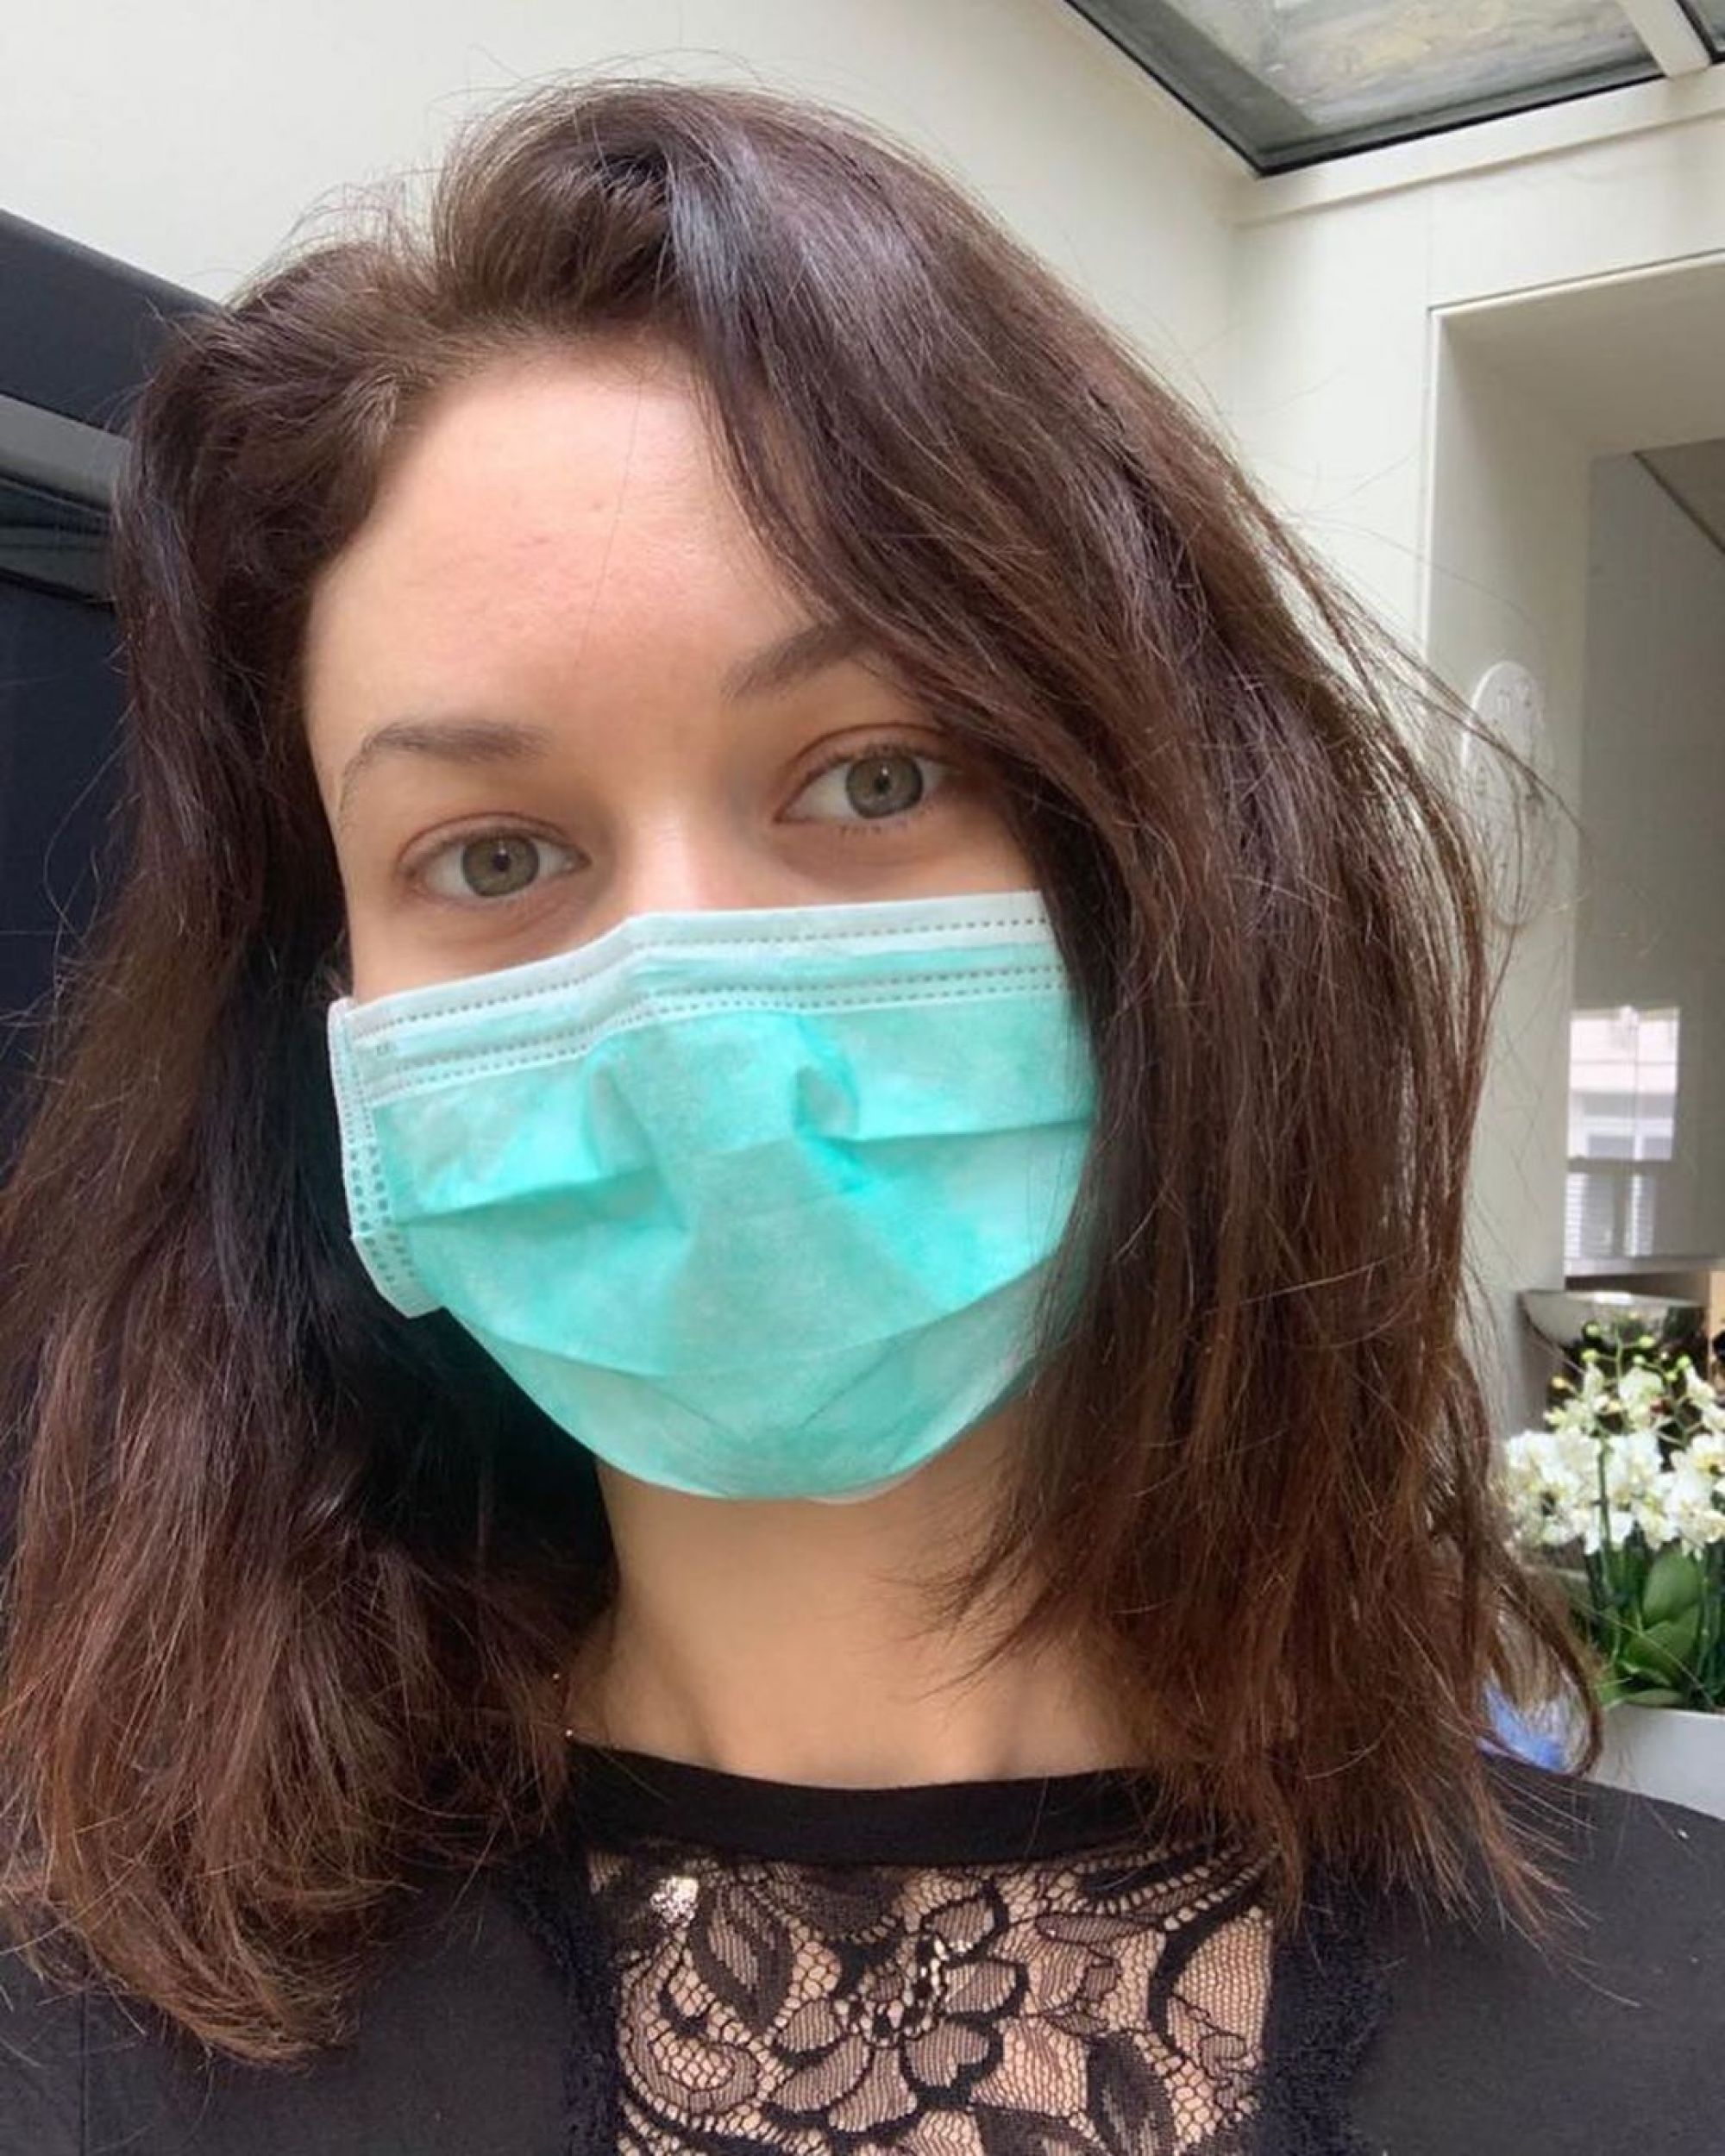 Ольга Куриленко рассказала, как могла заразиться коронавирусом